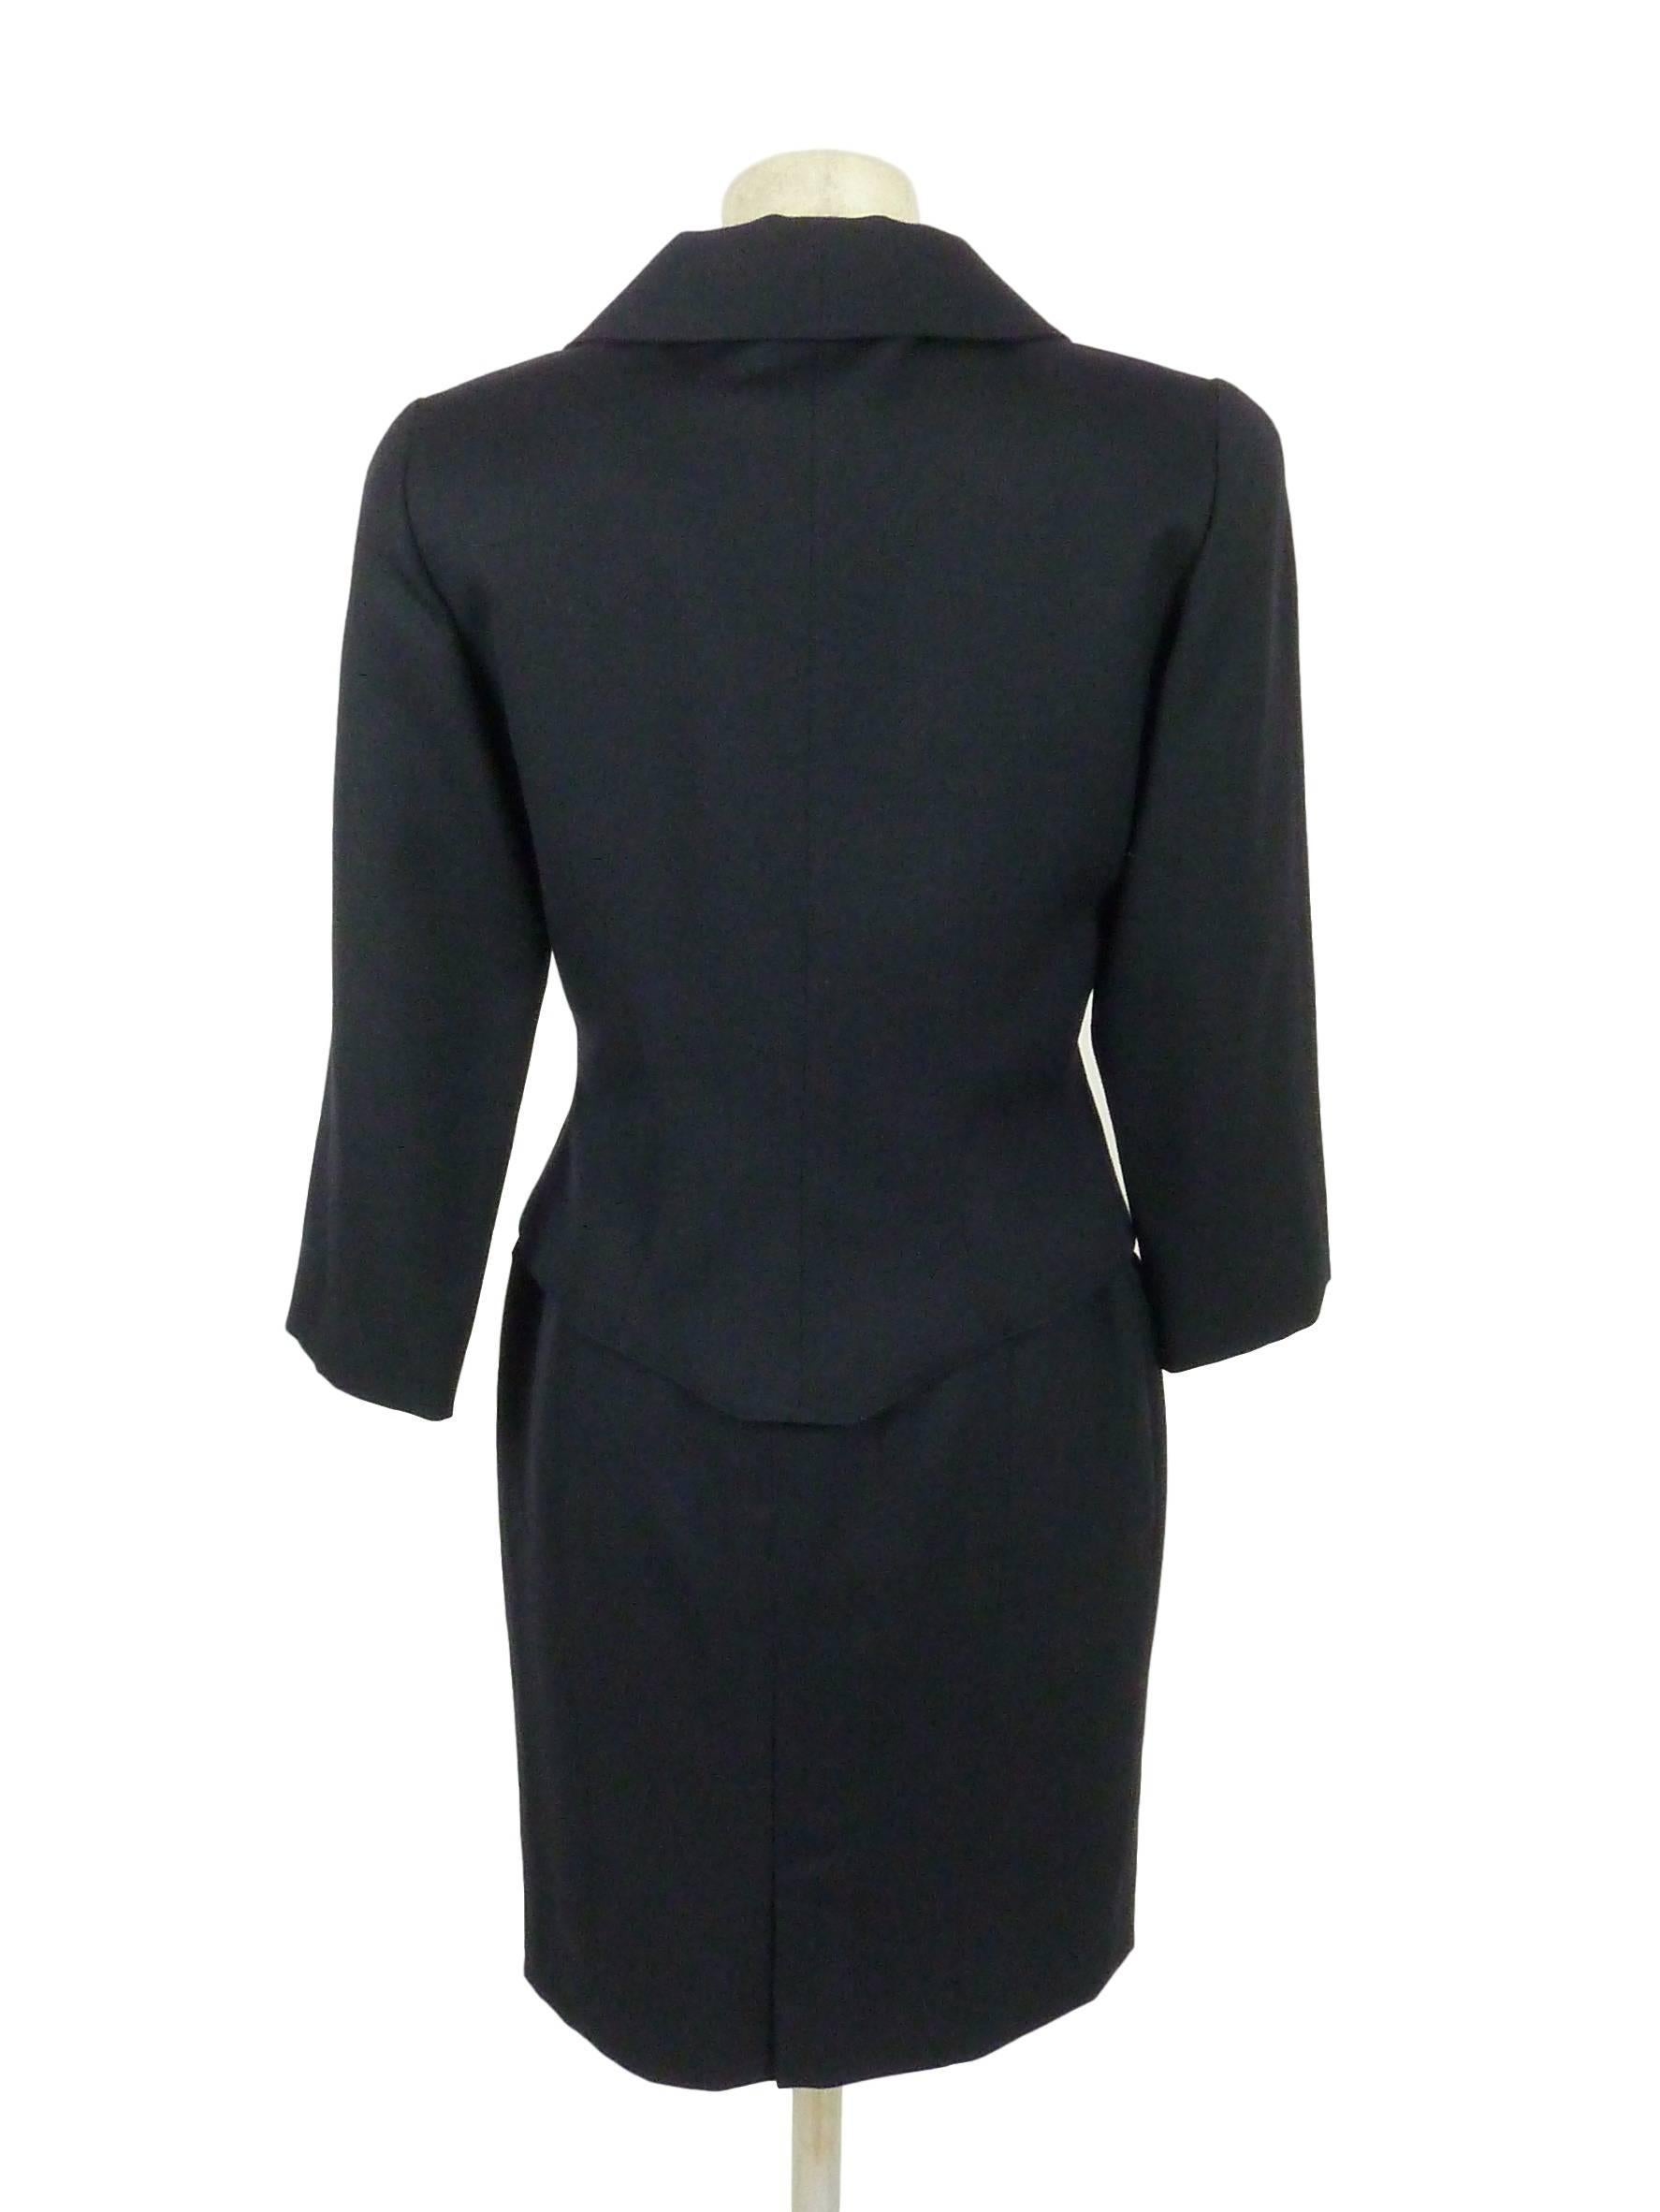 Black Fendi 365 vintage 1980s jacket and skirt set dress suit blue wool size 44  For Sale